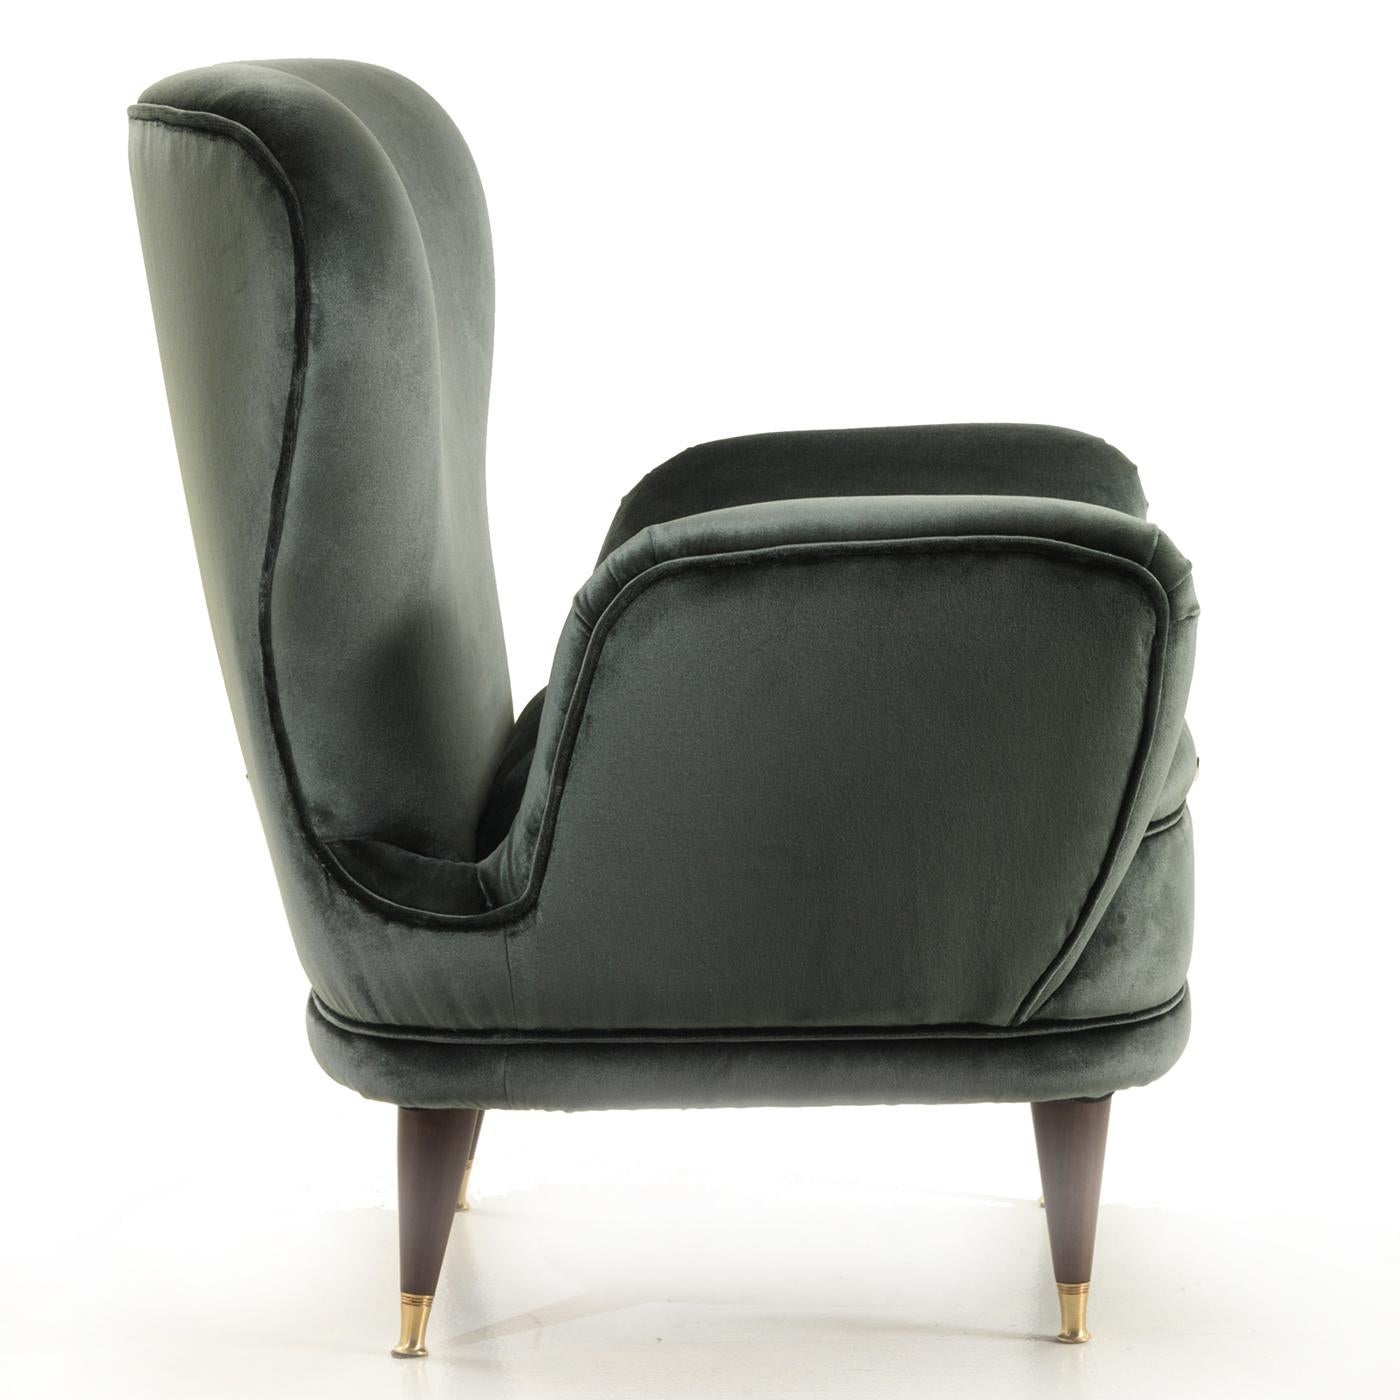 Als Teil der eleganten Piera Collection ist dieser Sessel eine charmante und zeitlose Ergänzung sowohl für eine klassische als auch für eine moderne Einrichtung. Die Holzstruktur ist in mattem, dunklem Walnussholz gehalten, das sich in den elegant